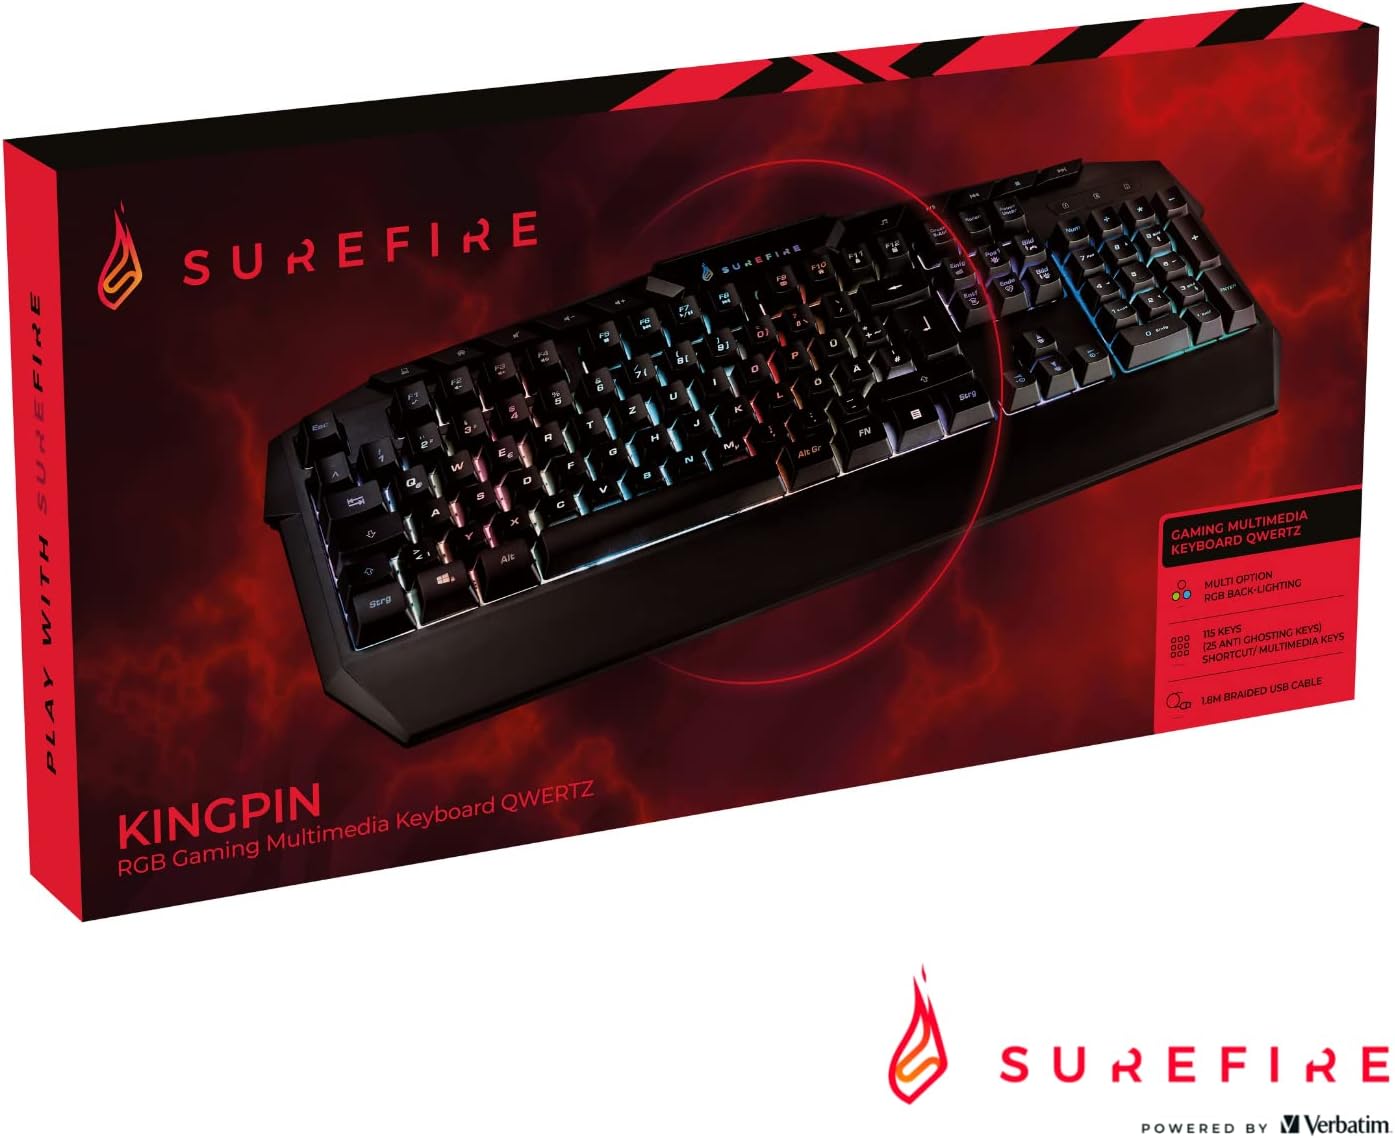 Surefire KingPin RGB Gaming Multimedia QWERTZ Keyboard - New